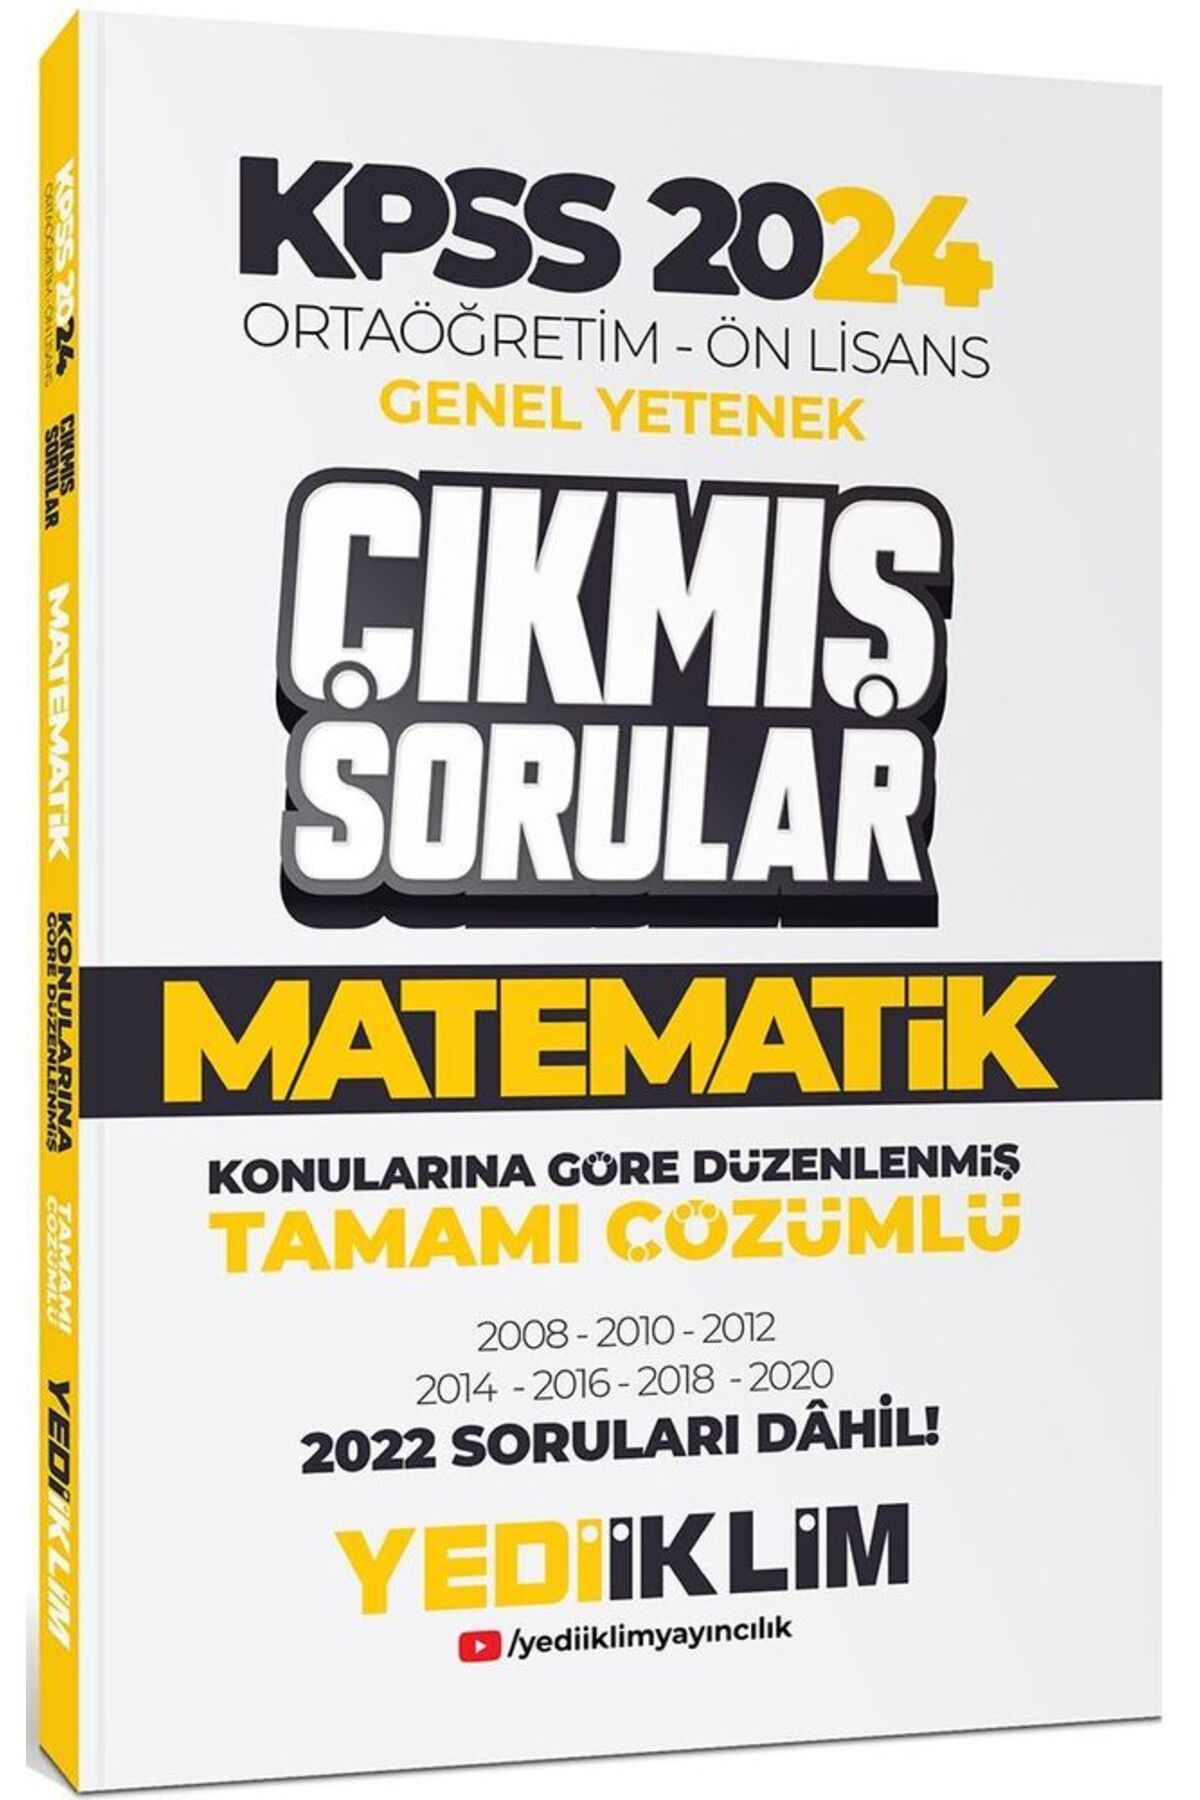 Yediiklim Yayınları Kpss 2024 Ortaöğretim-önlisans Matematik Konularına Göre Çıkmış Sorular